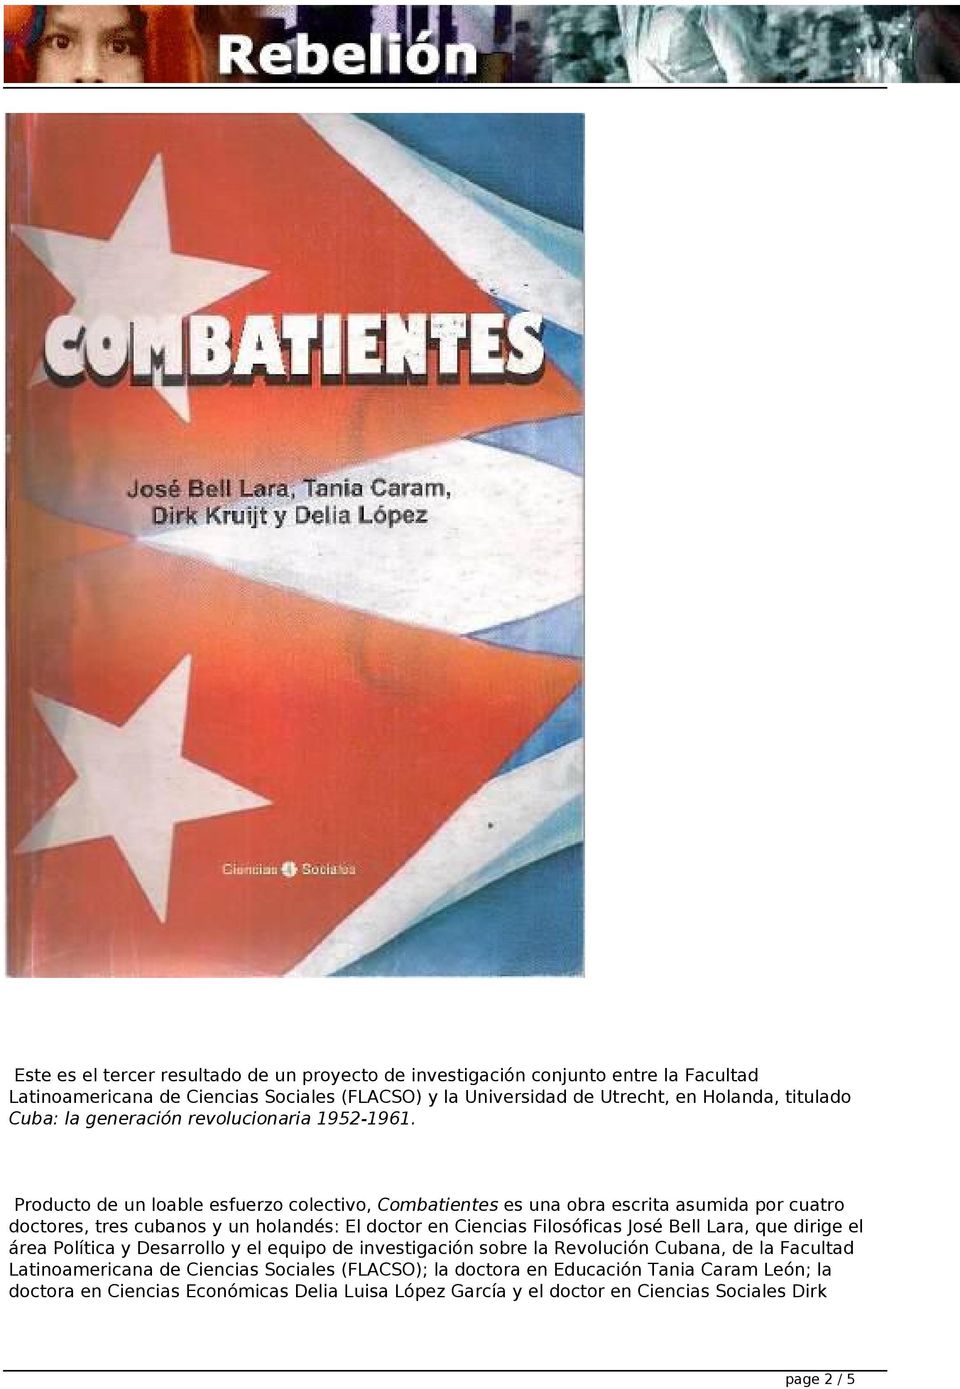 Producto de un loable esfuerzo colectivo, Combatientes es una obra escrita asumida por cuatro doctores, tres cubanos y un holandés: El doctor en Ciencias Filosóficas José Bell